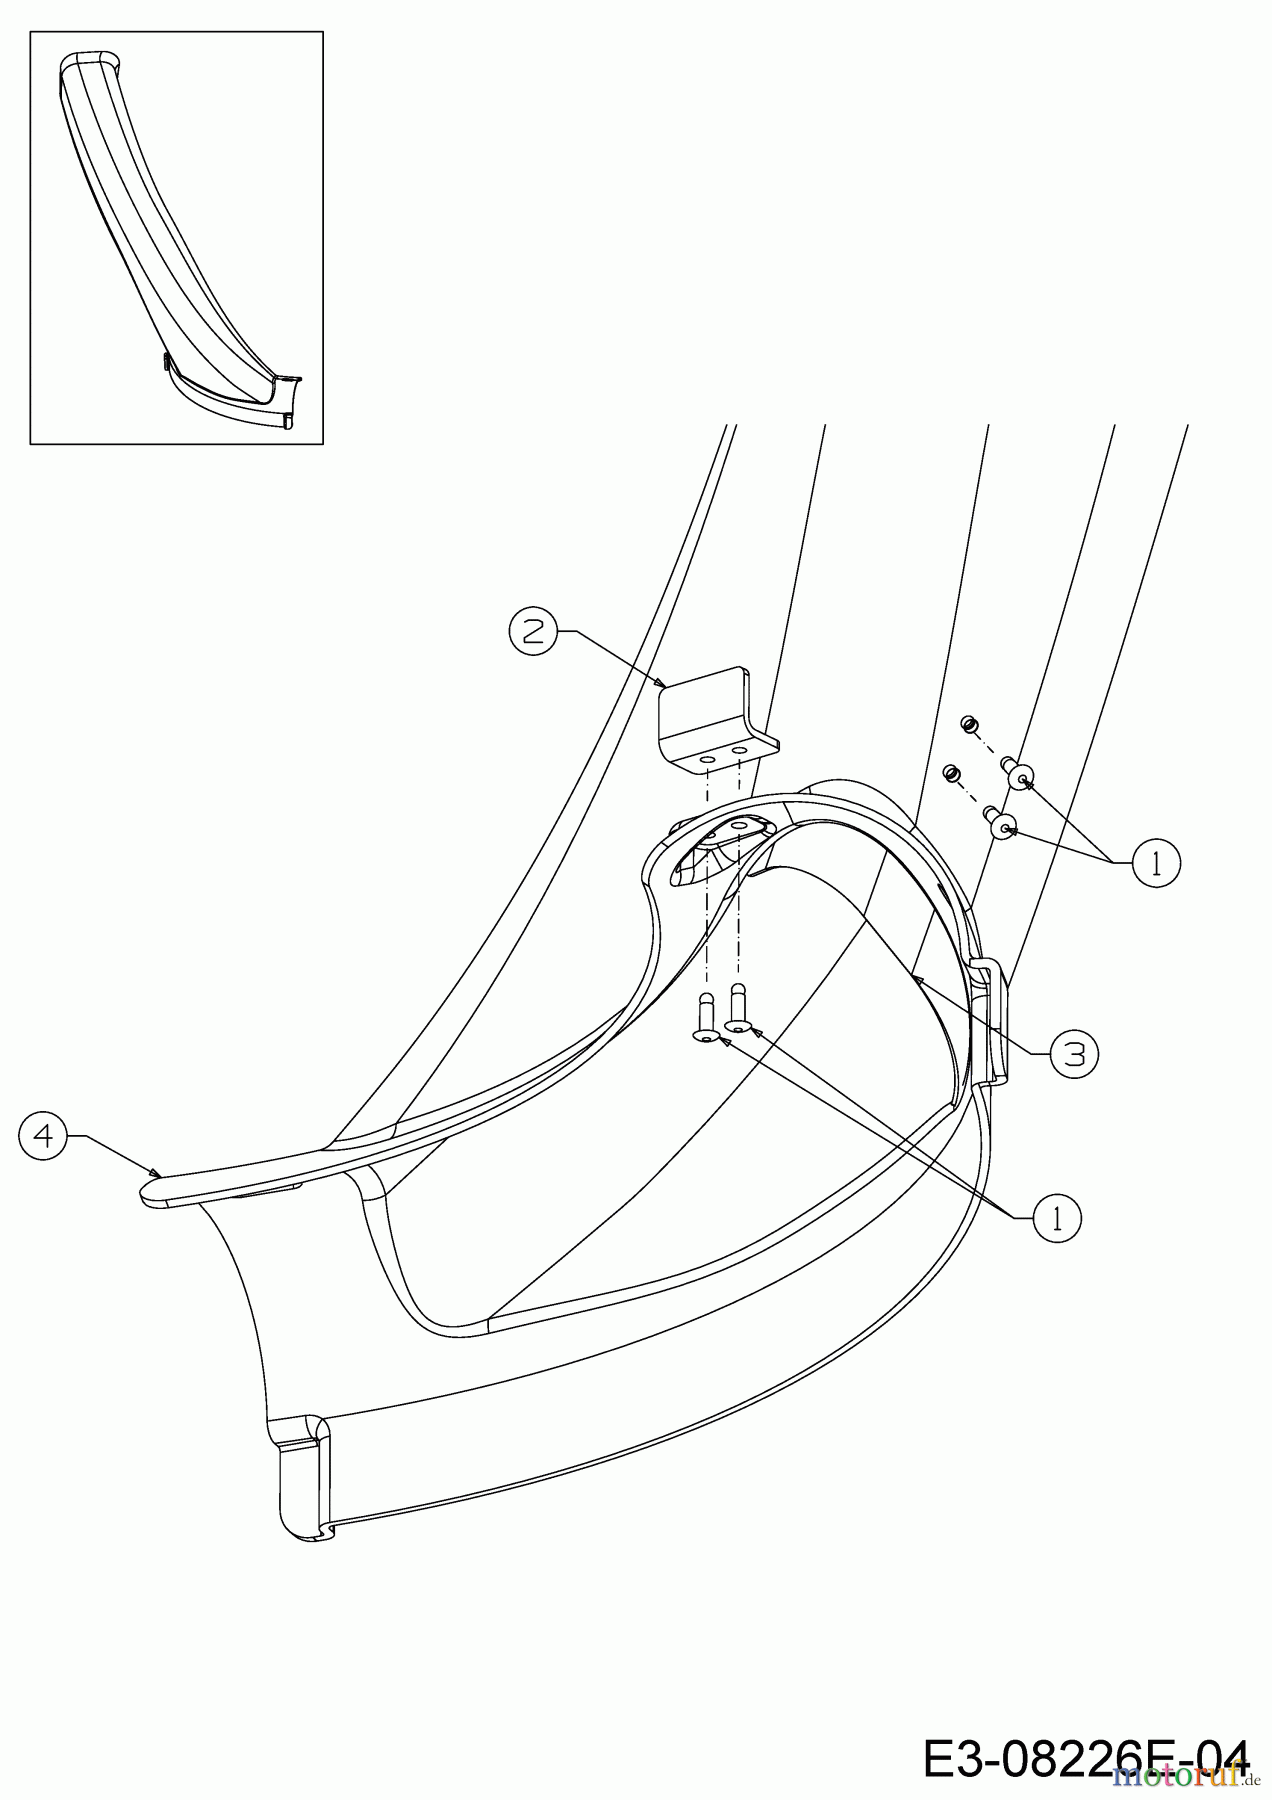  WOLF-Garten Expert Rasentraktoren Scooter Pro Hydro 13A221HD650  (2017) Auswurfschacht